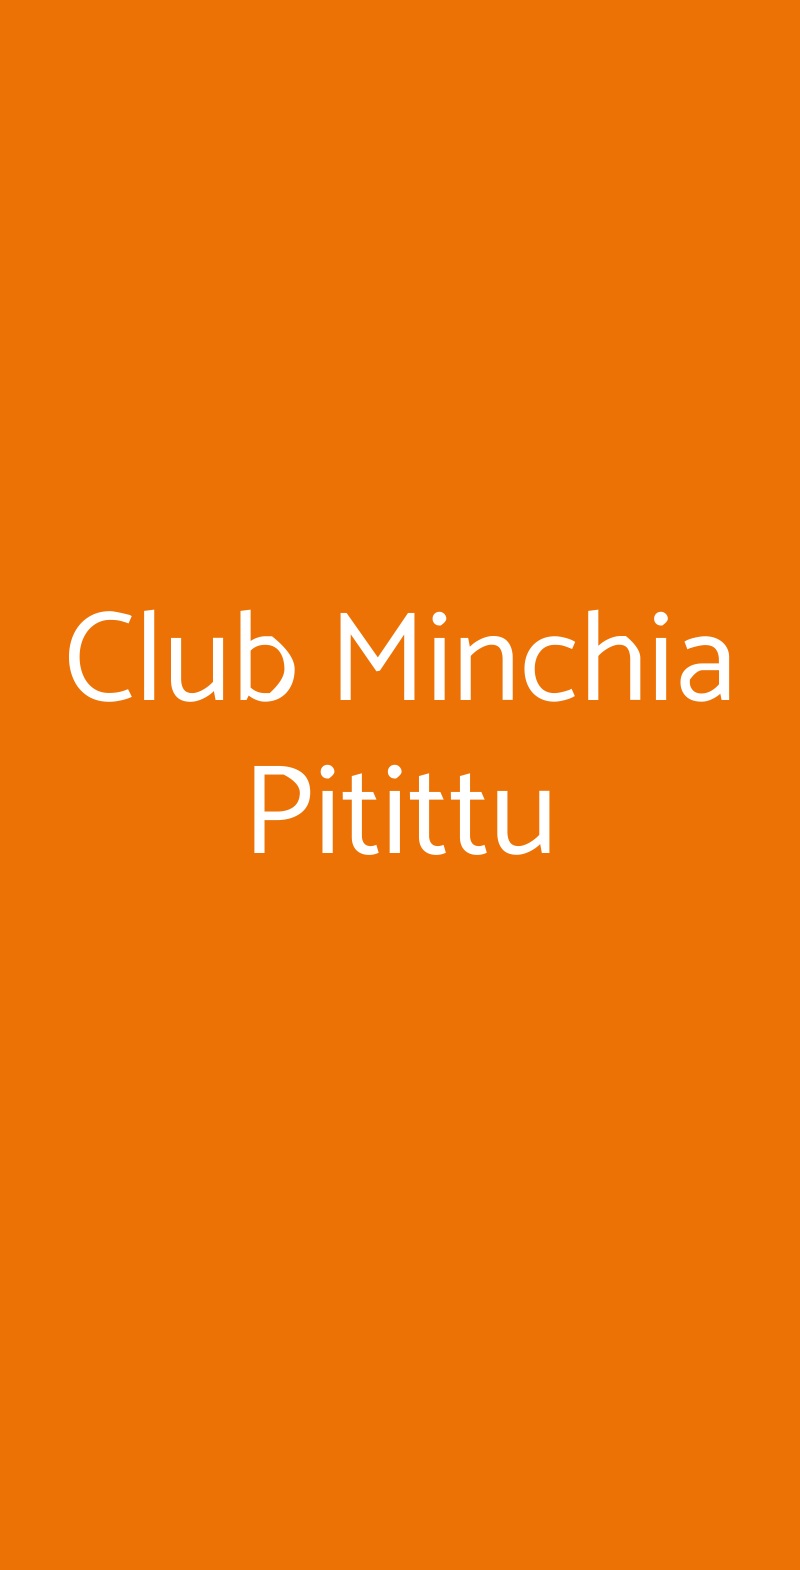 Club Minchia Pitittu Segrate menù 1 pagina